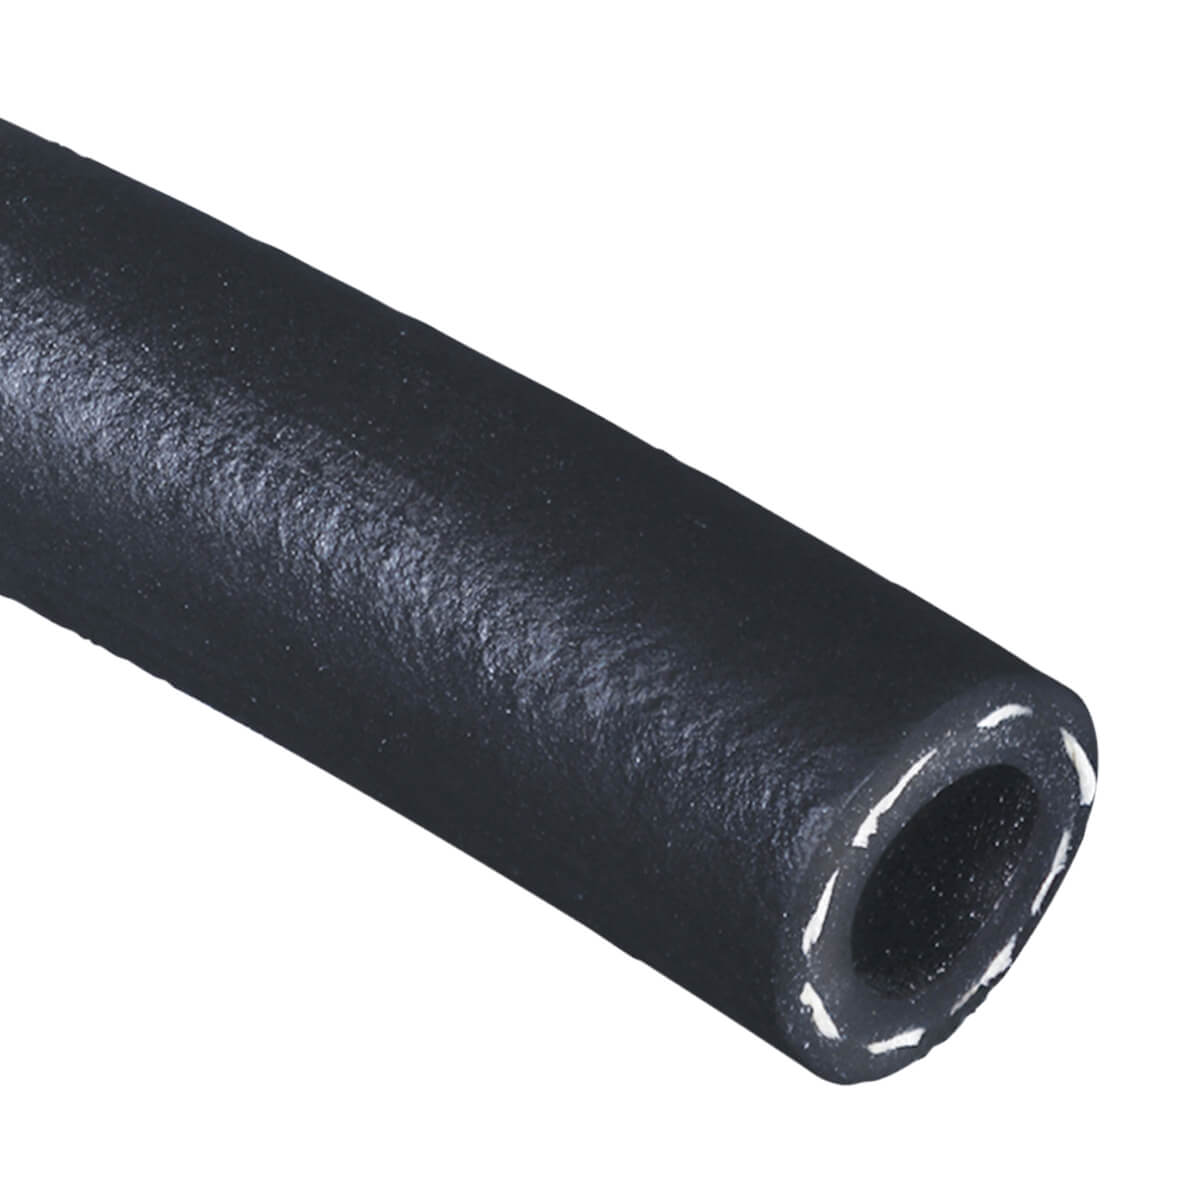 Black 200 PSI Multipurpose - AG 200 - Air & Water Hose - 1-1/4-in - Price Per ft